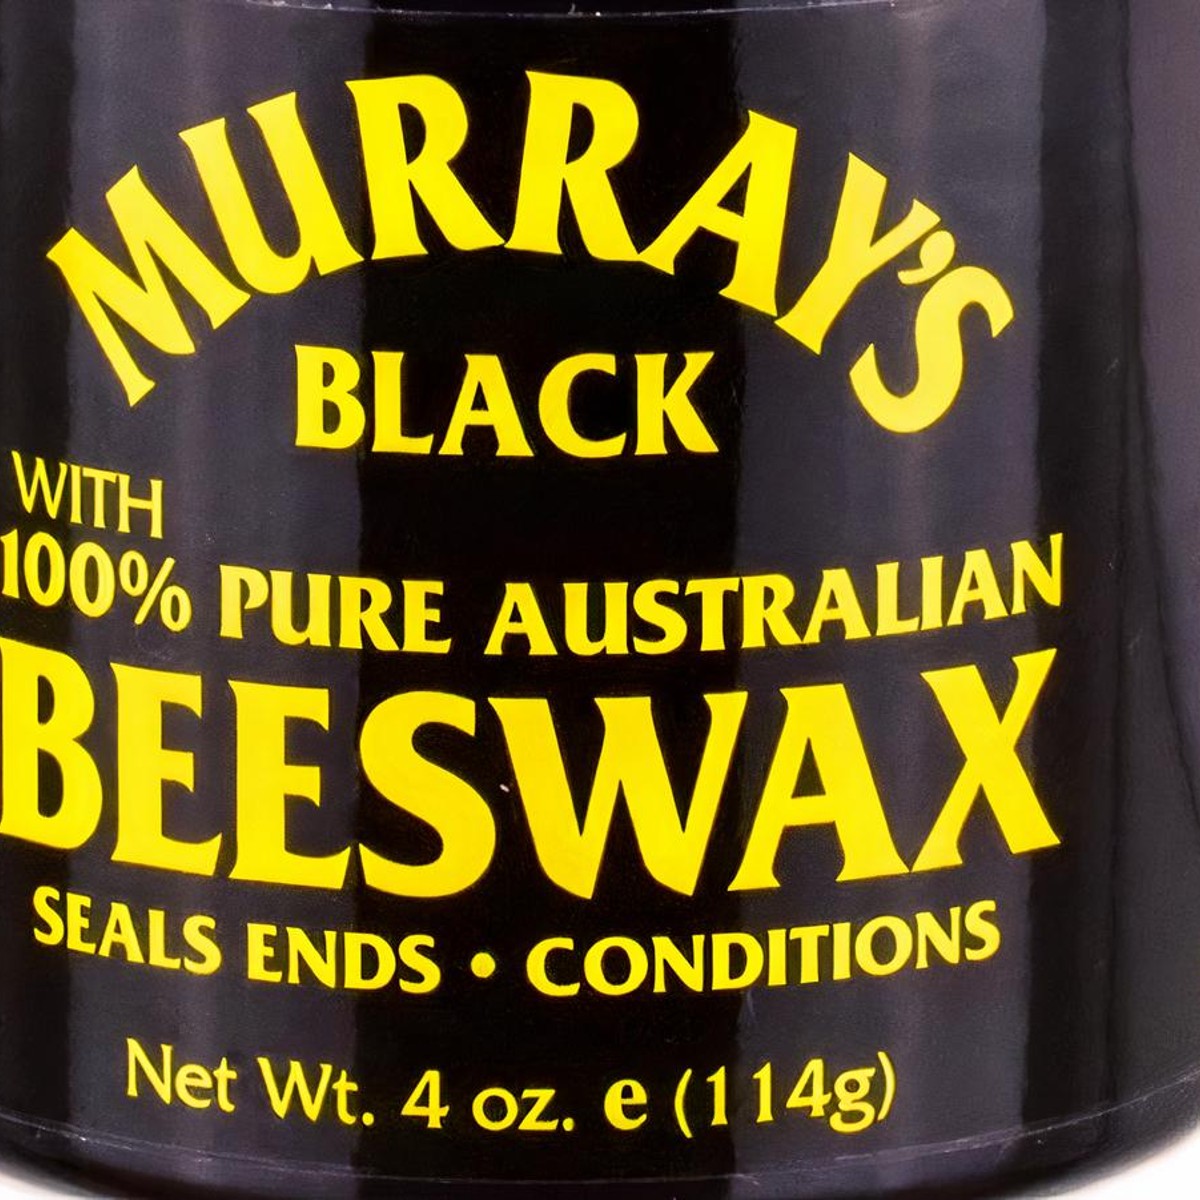 Murray's w/ 100% Pure Australian Beeswax